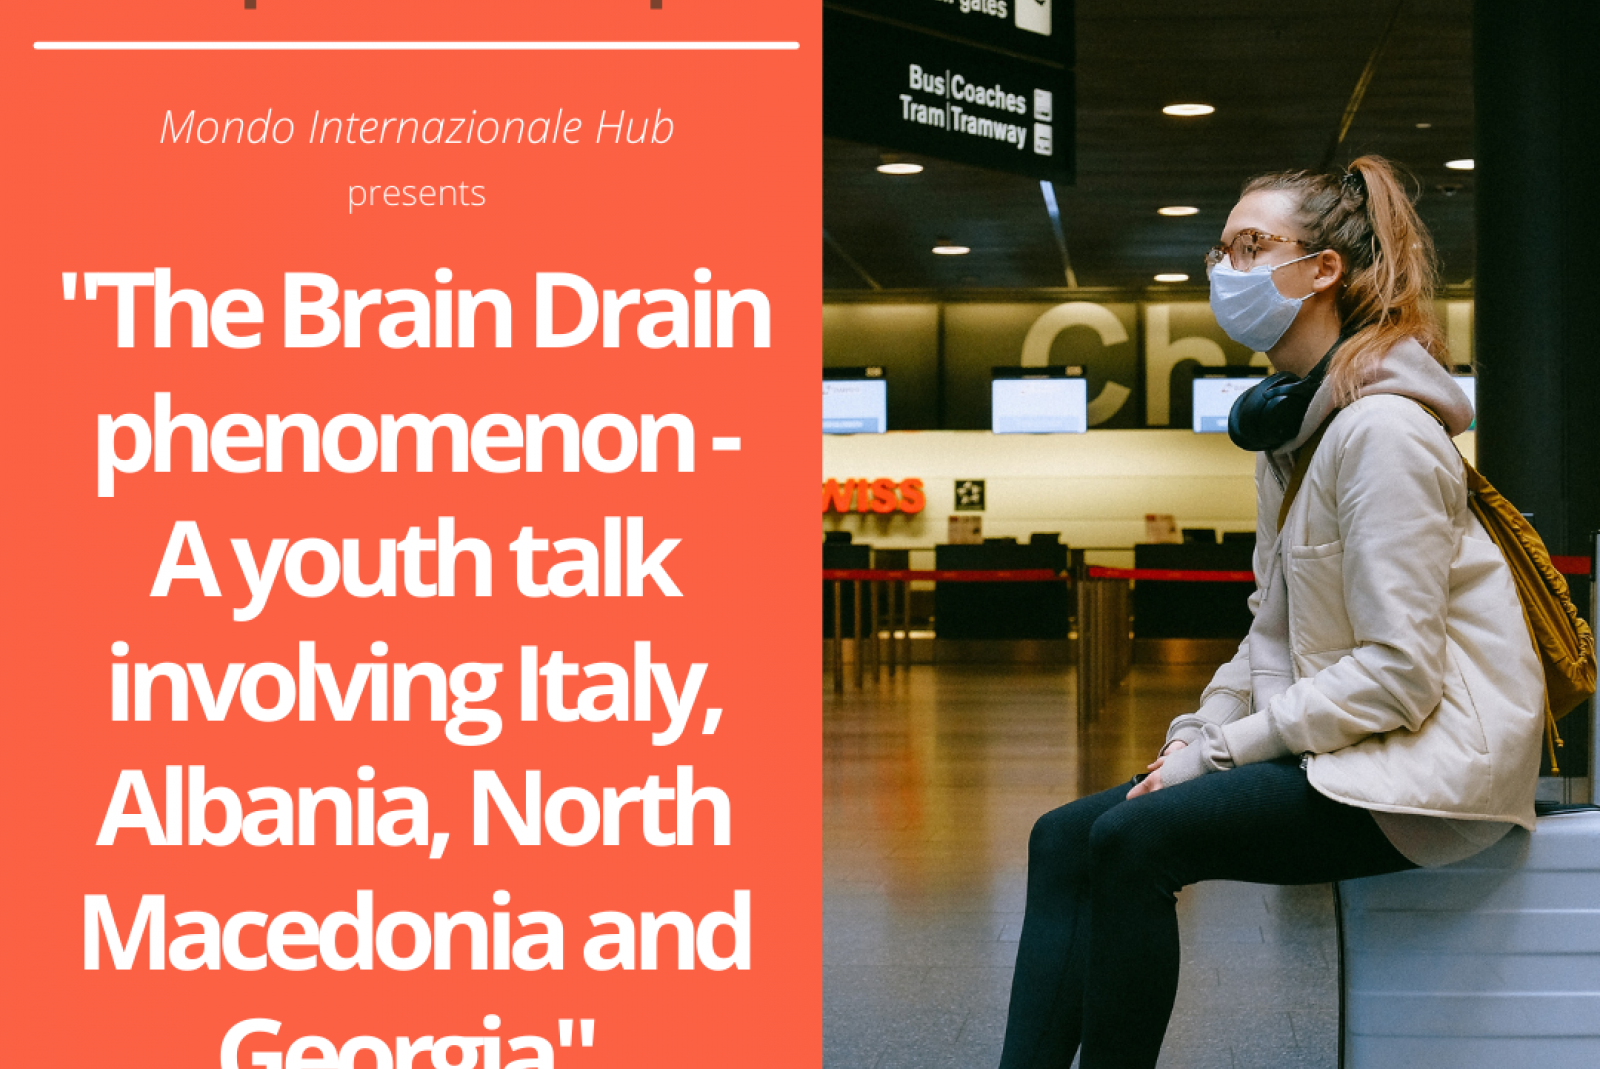 The Brain Drain phenomenon: A youth talk involving Italy, Albania, North Macedonia and Georgia - 31 May 2021